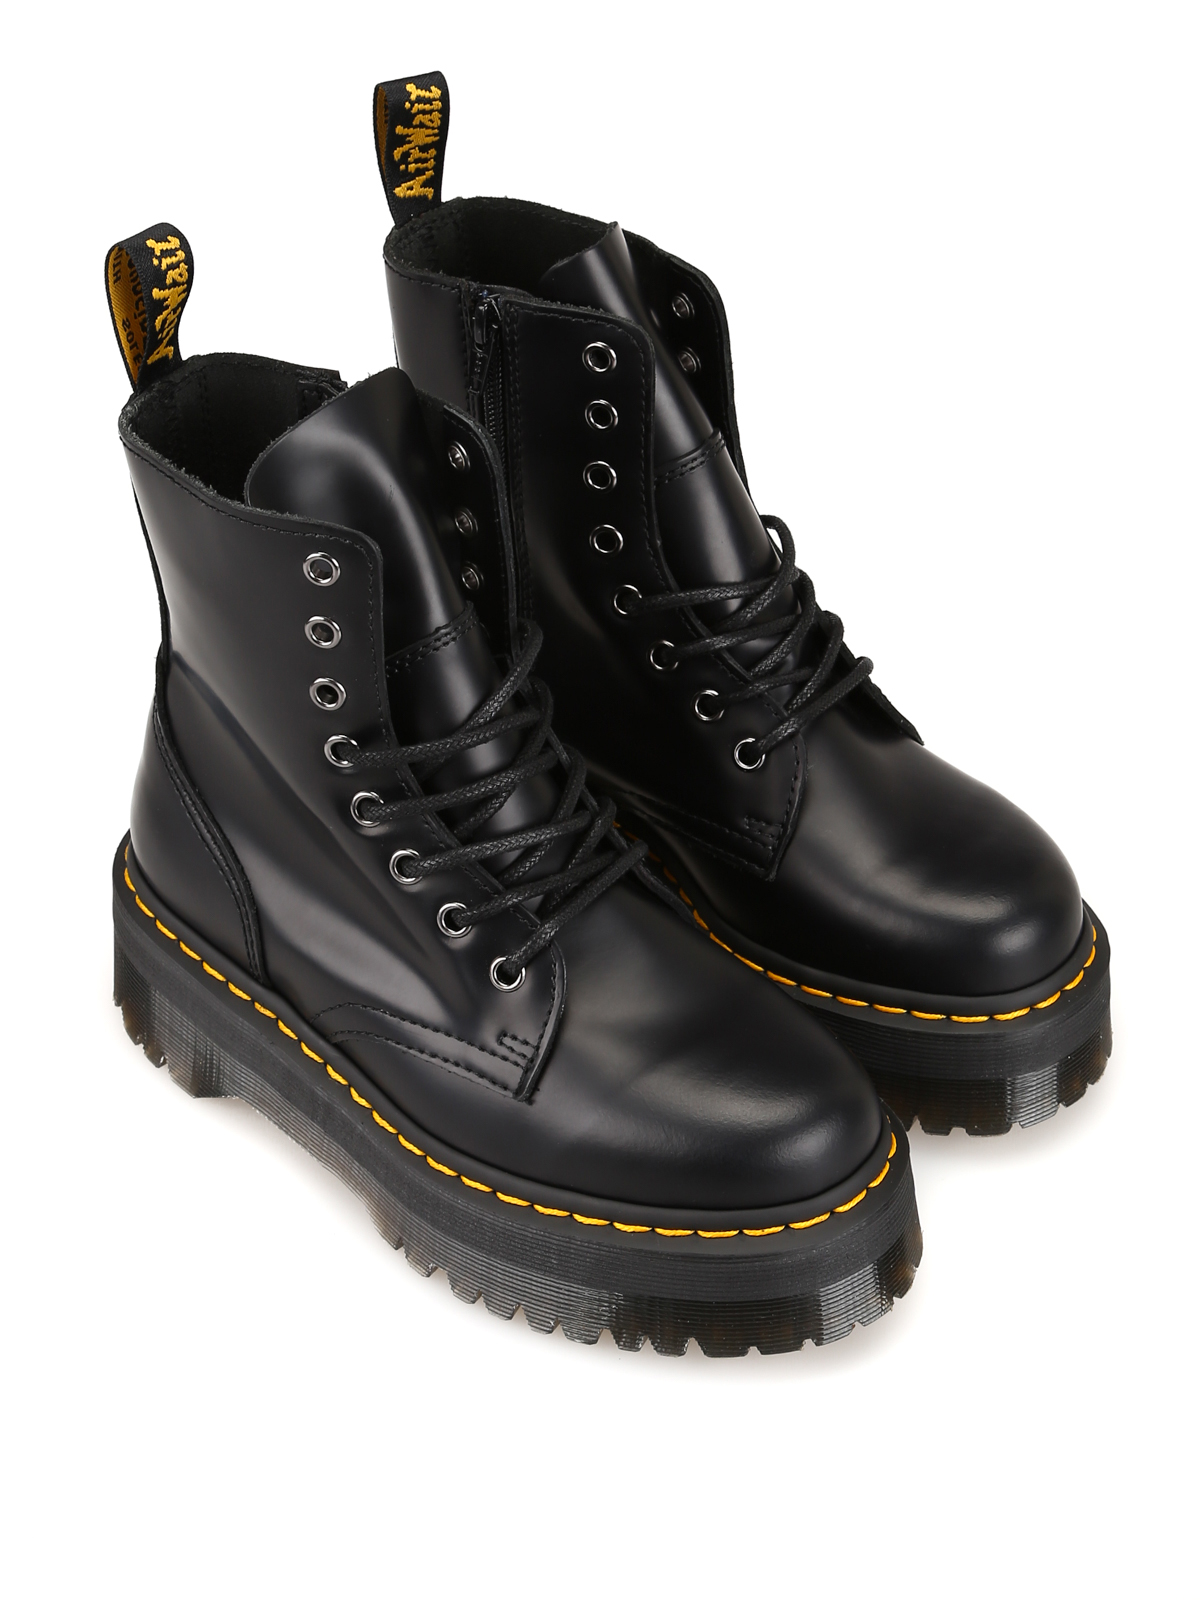 medeklinker extase blootstelling Ankle boots Dr. Martens - Jadon combat boots - 15265001 | iKRIX.com